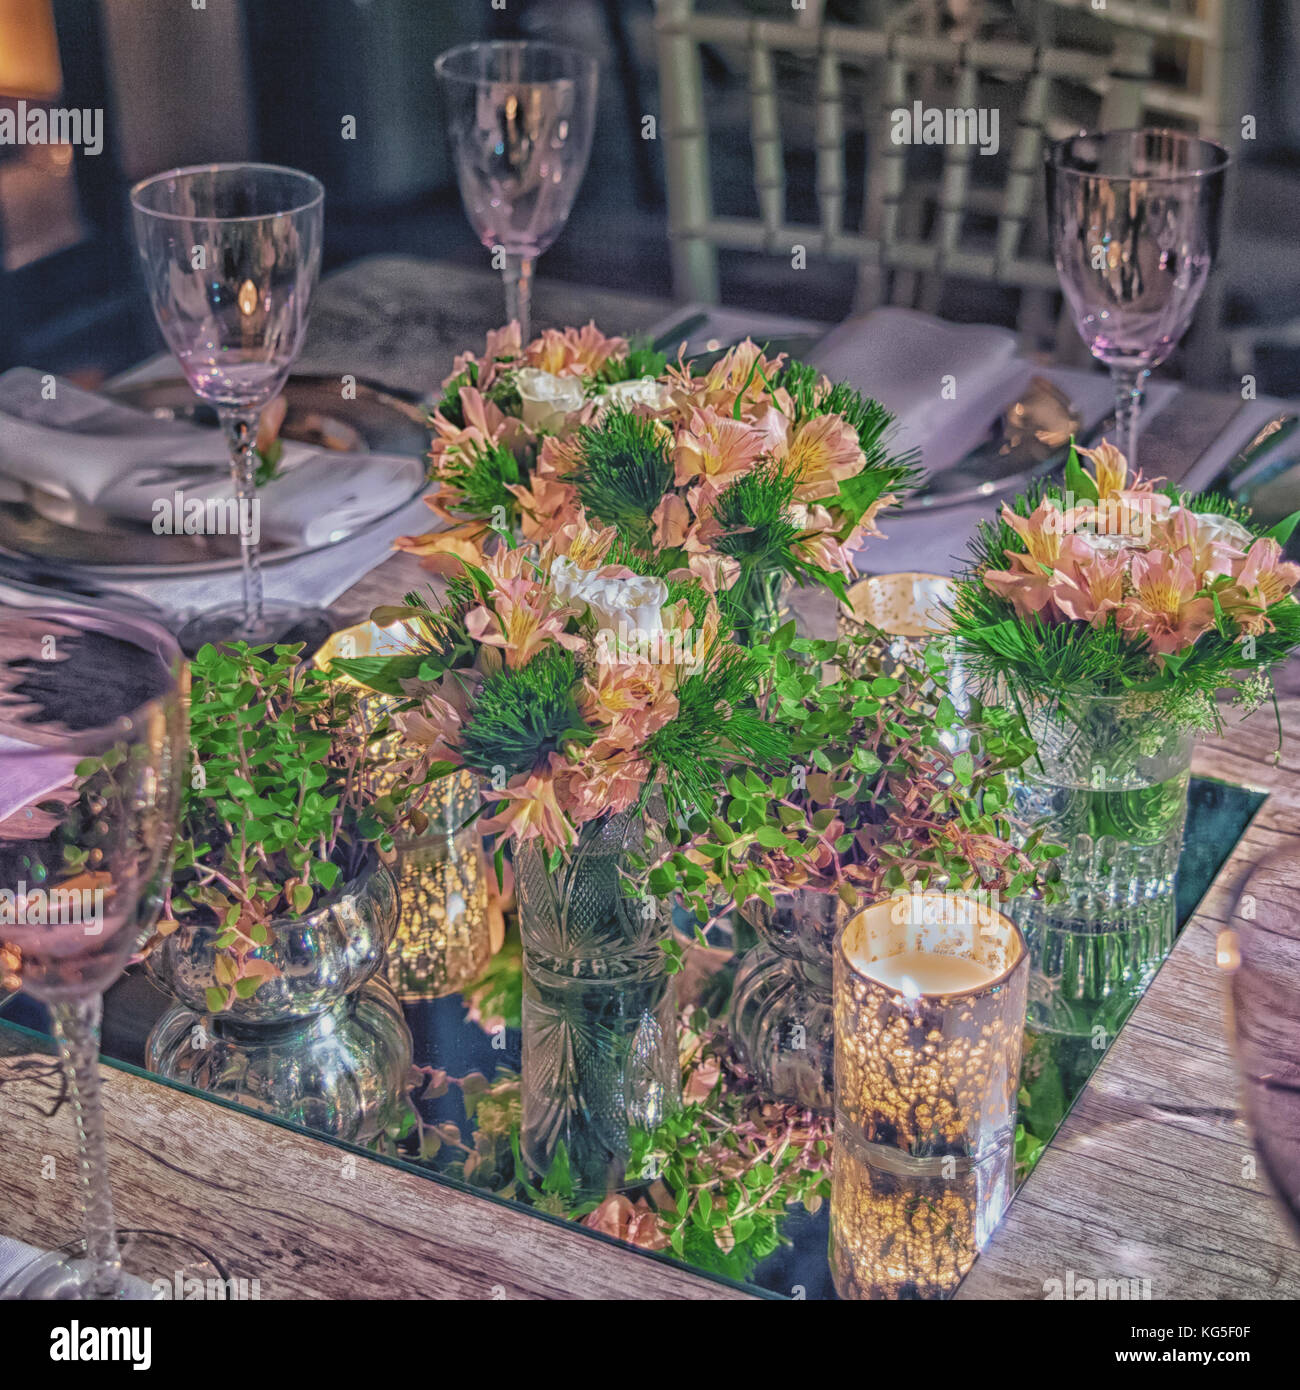 Splendidamente decorate le tabelle per gli ospiti con decorazioni Foto Stock